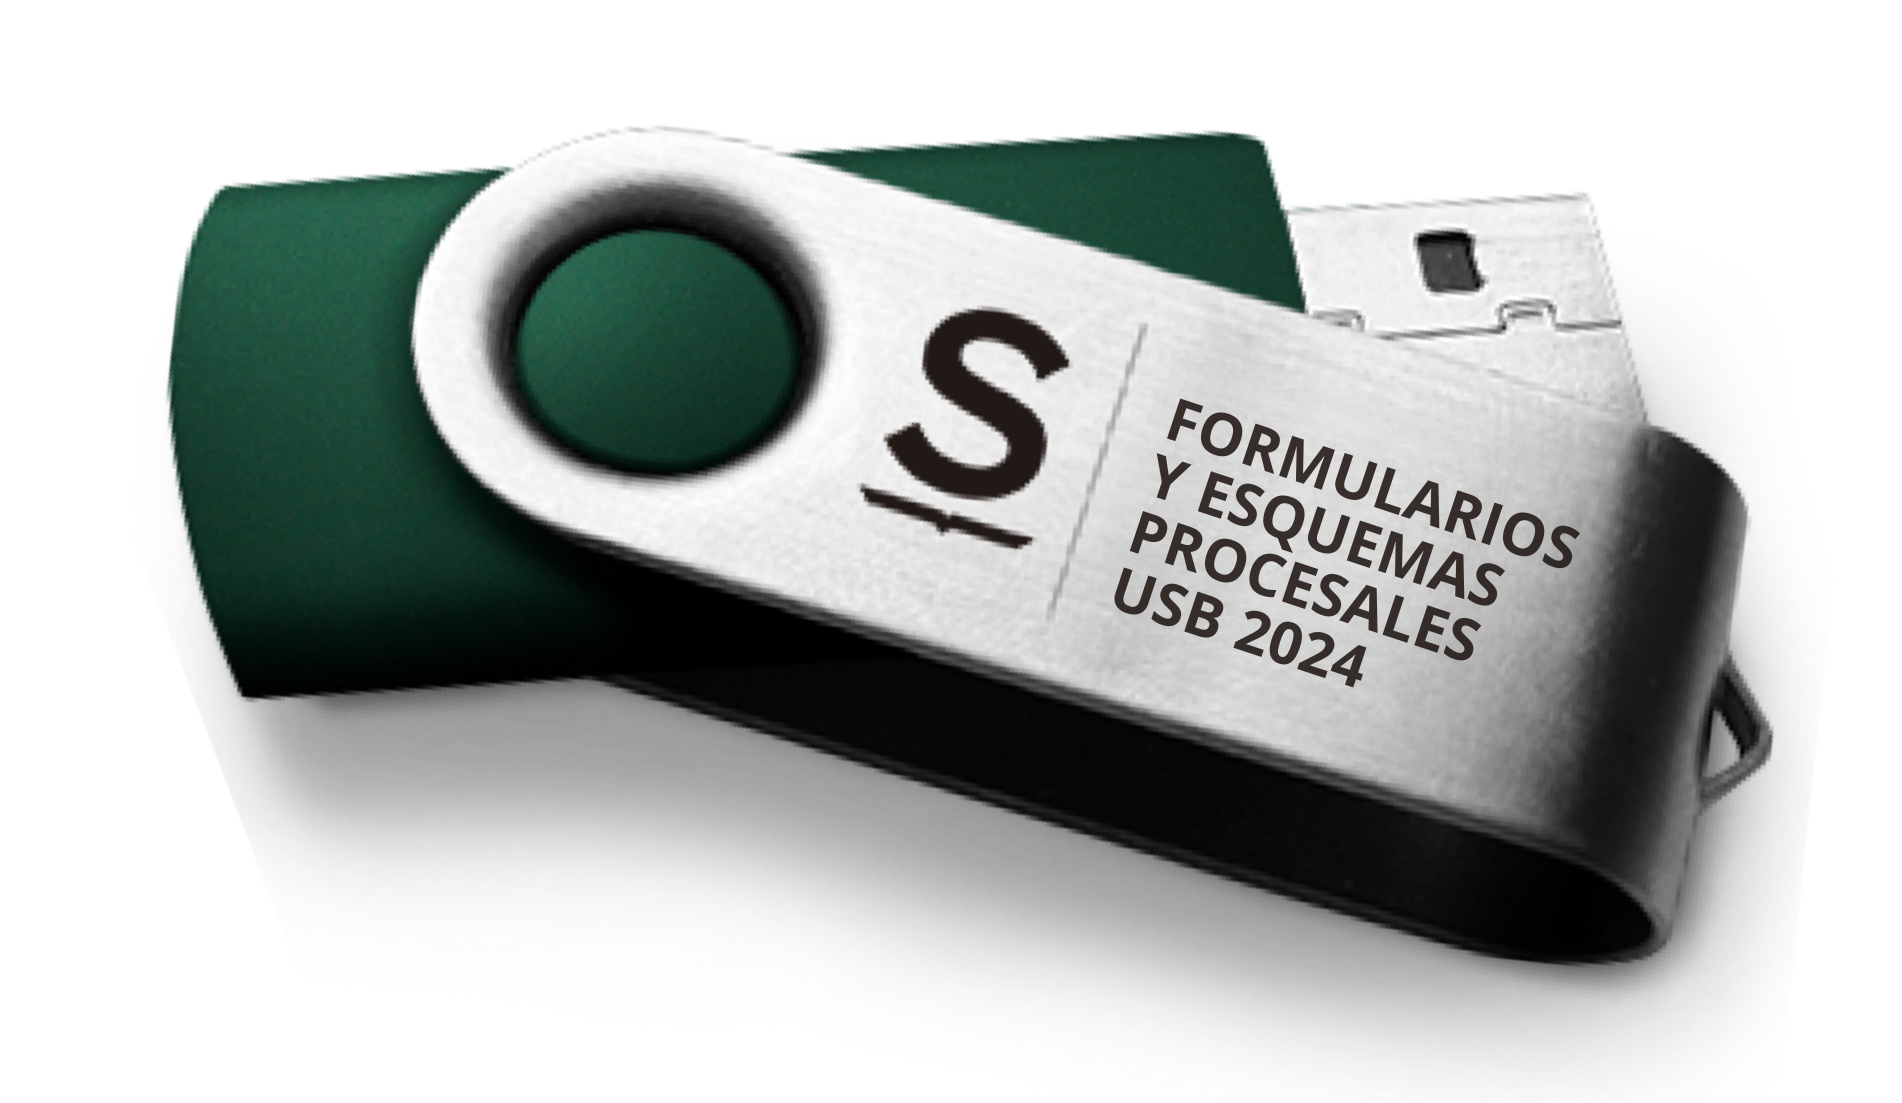 Formularios Procesales 2018 en formato USB